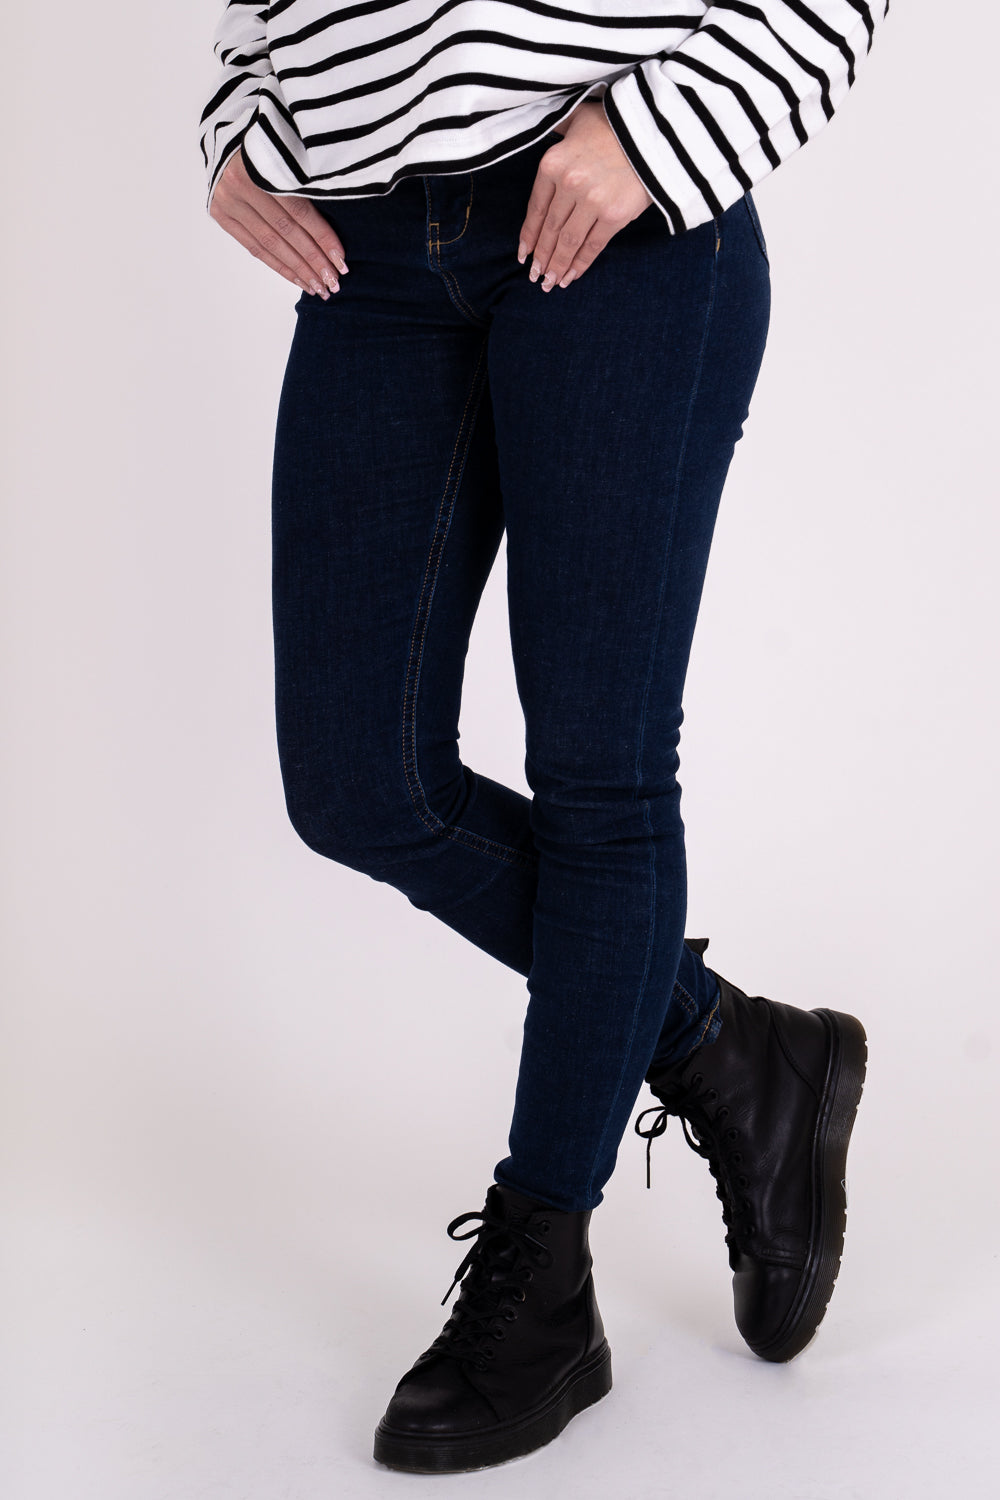 Monkee Genes Women Black Jeans Capris Size 10 28W